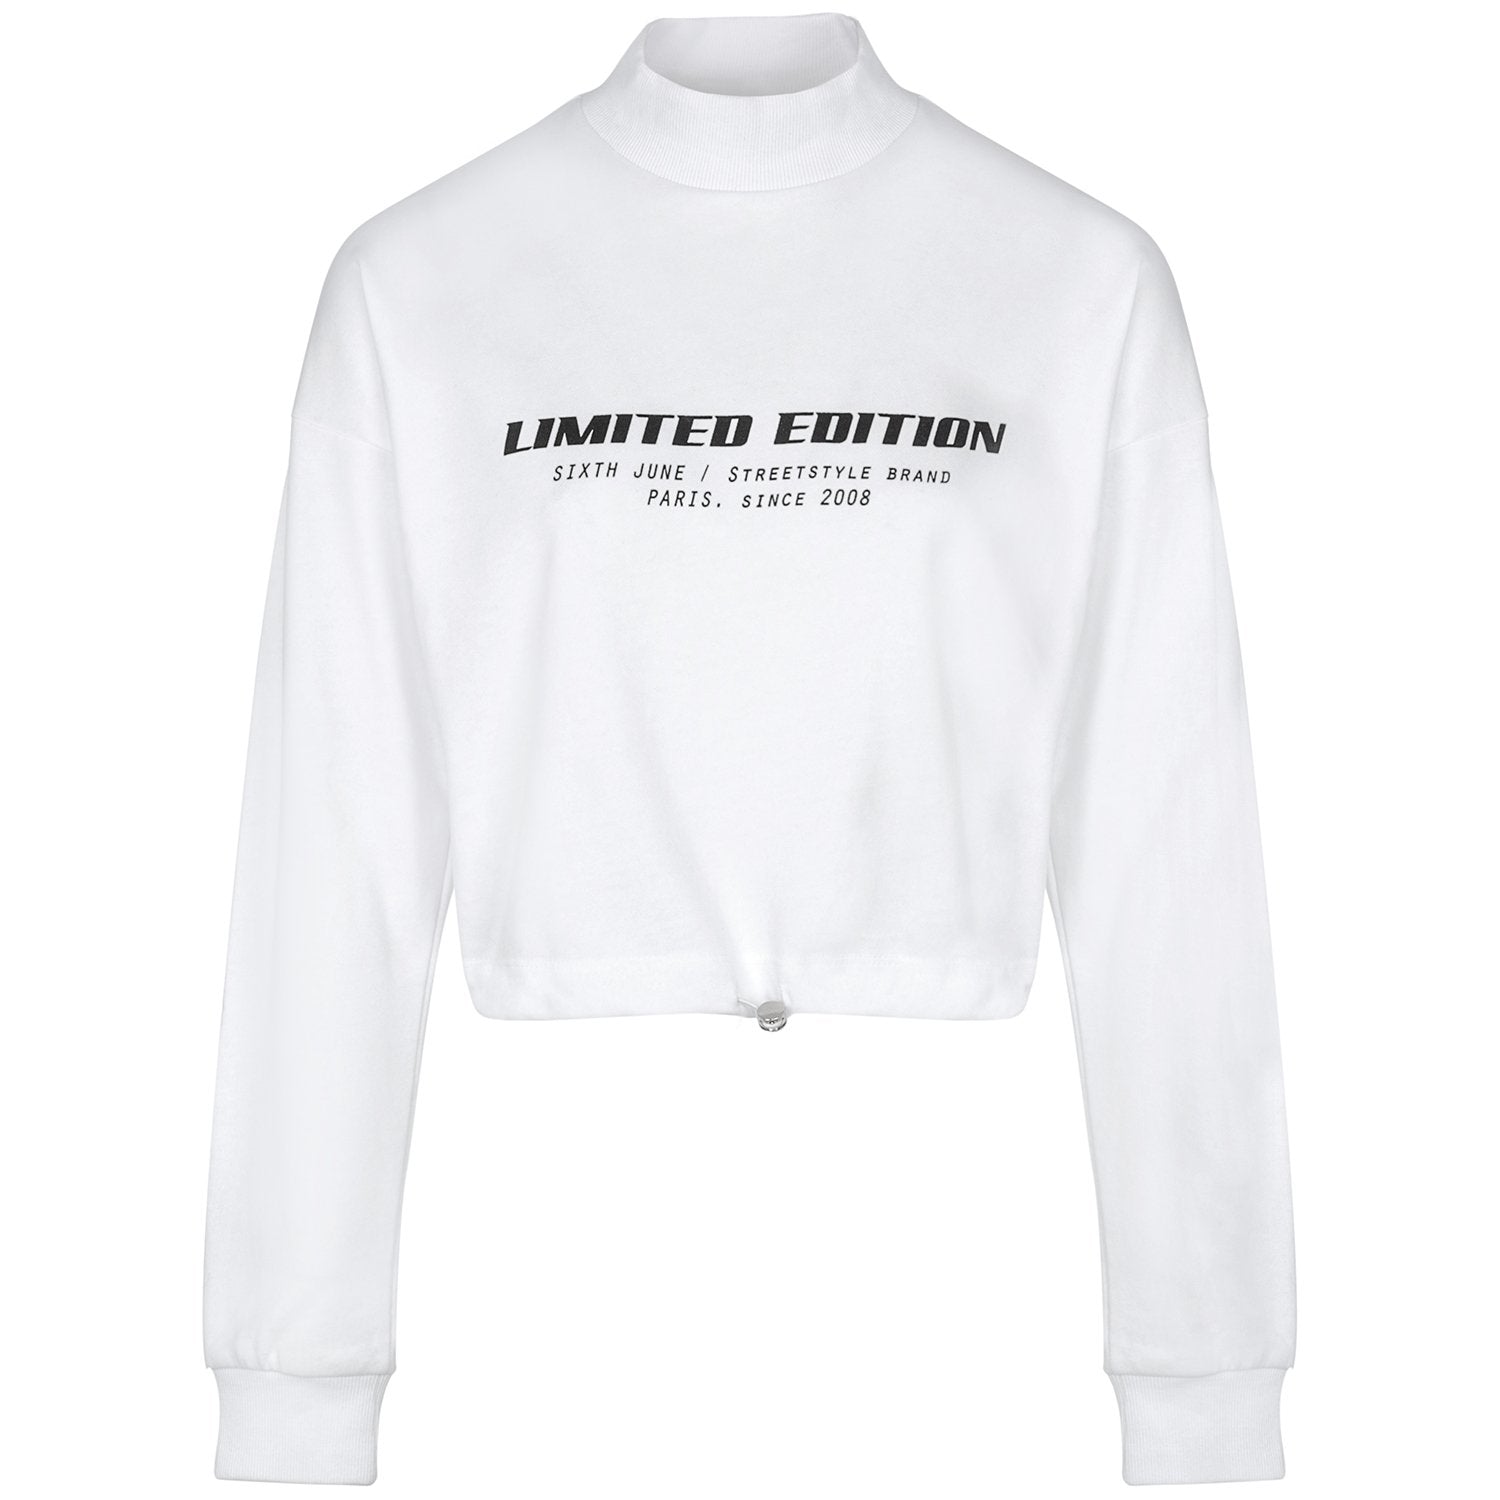 Weißes Sweatshirt in limitierter Auflage